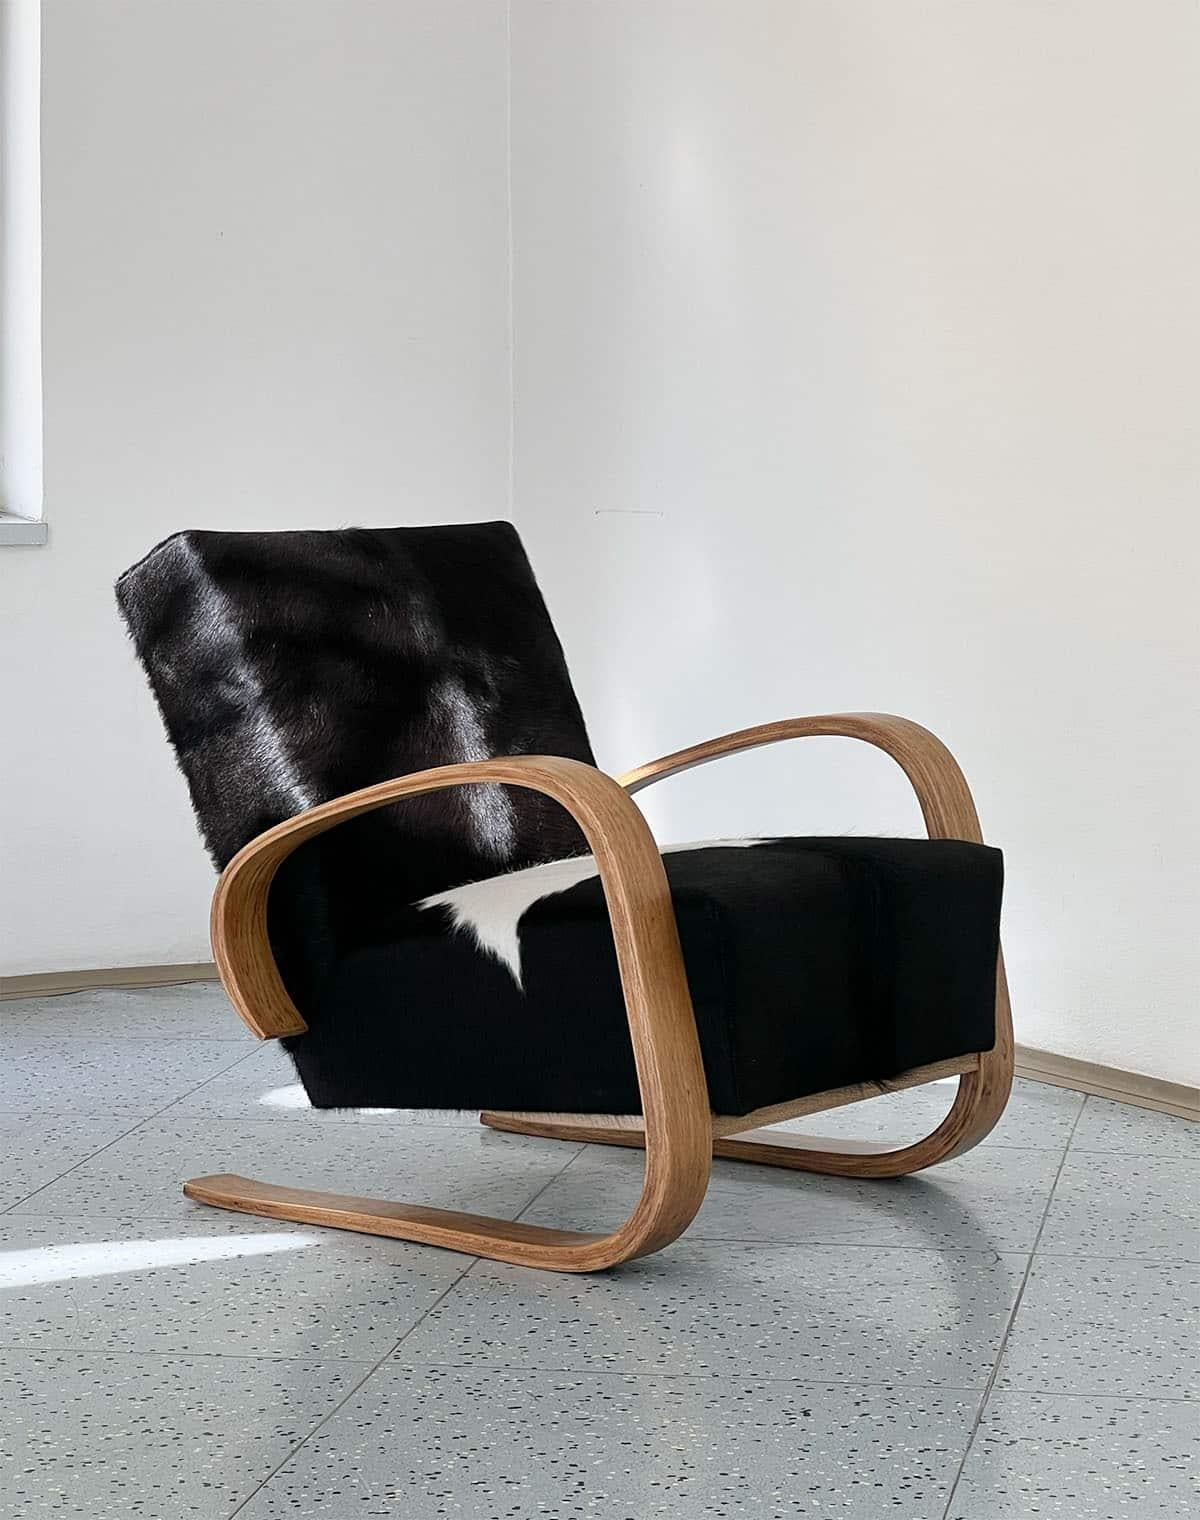 Freischwinger-Sessel, entworfen von Miroslav Navrátil für Spojené UP závody in der Tschechoslowakei, 1950er Jahre.

Dieser Loungesessel wurde von Miroslav Navratil entworfen und mit diesem schönen Rindsleder neu gepolstert. Die Farben der